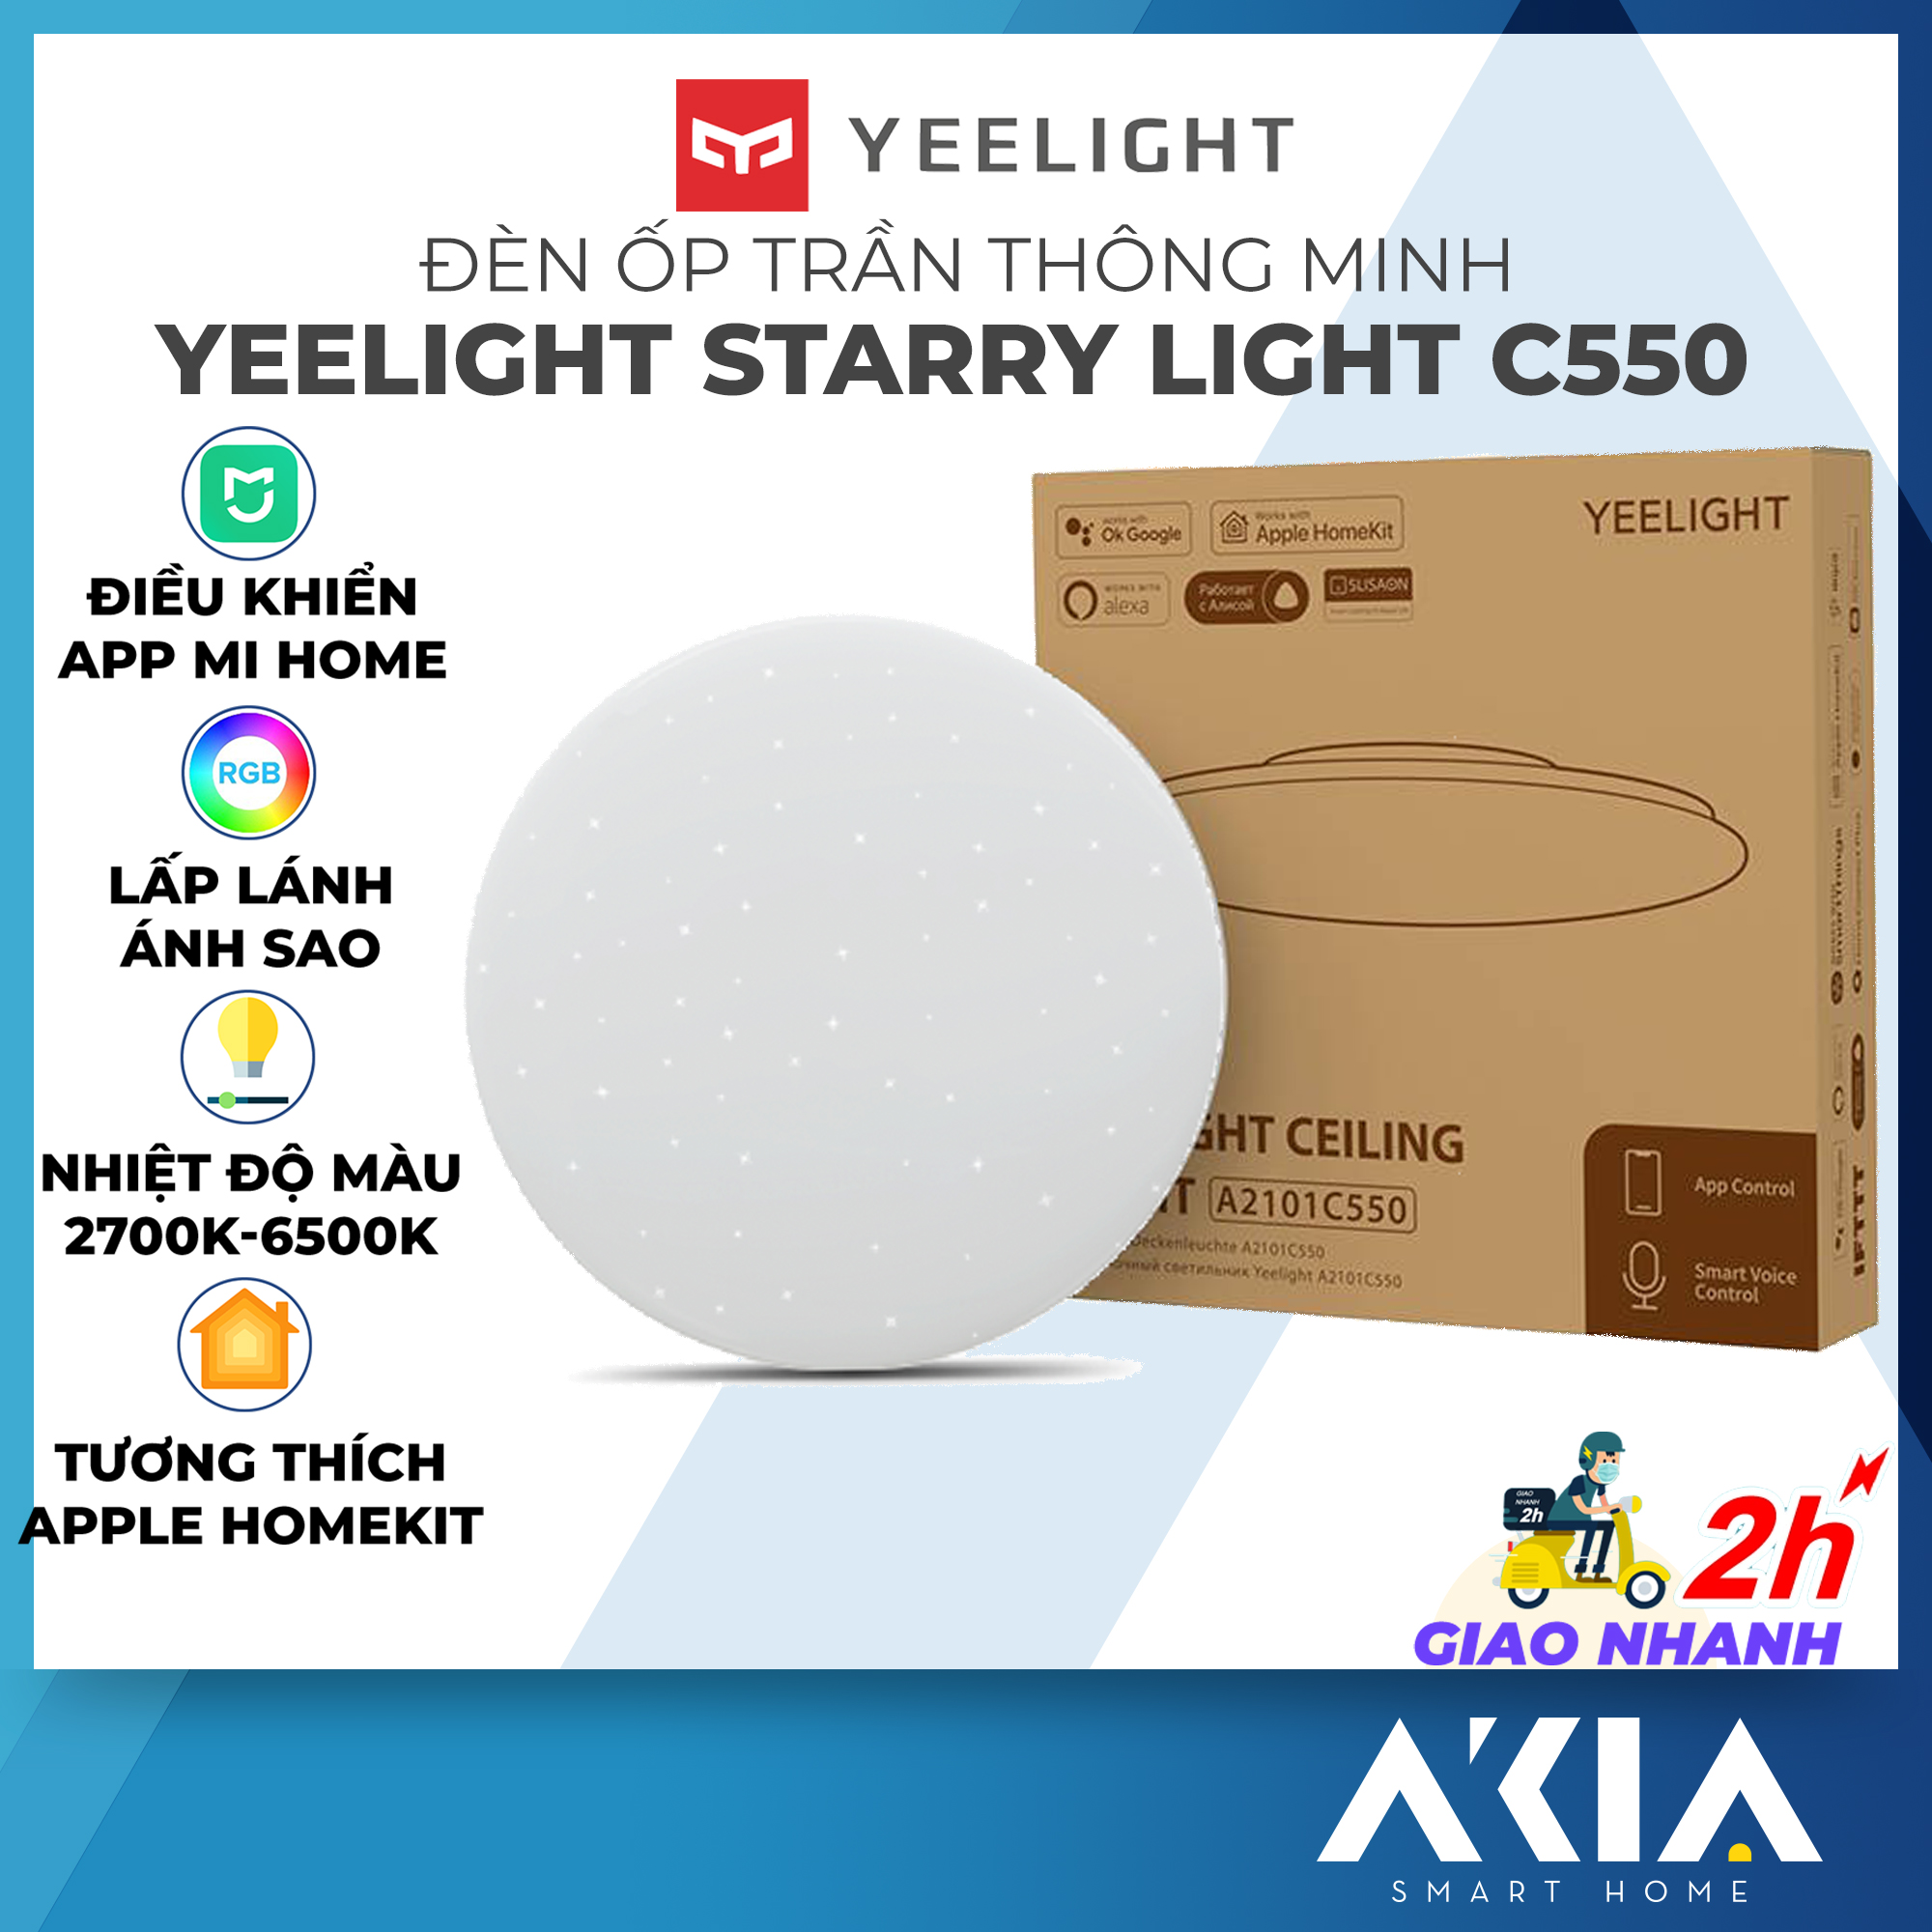 Đèn trần thông minh Yeelight 450C / 550C Starry phiên bản ánh sao - Hỗ trợ Homekit - Điều khiển bằng app